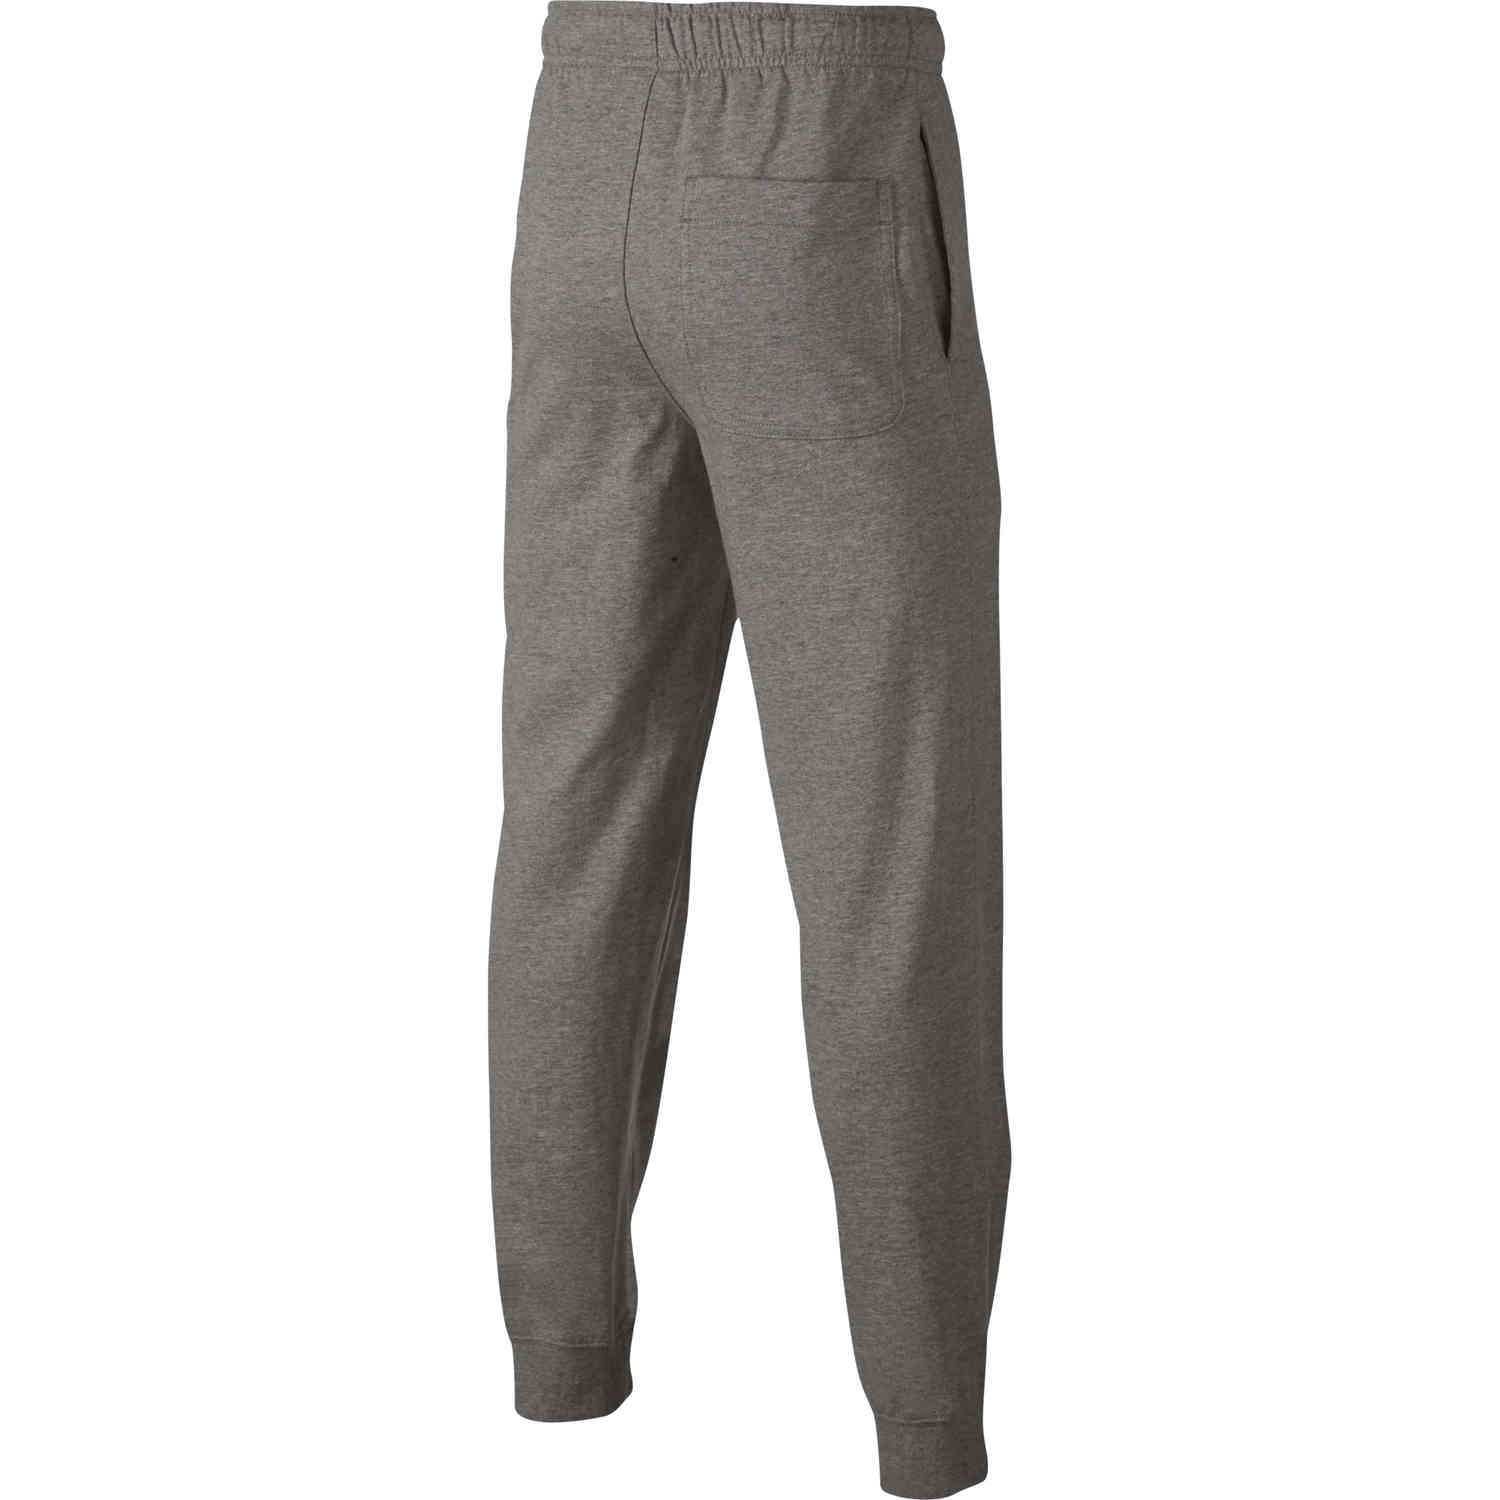 Kids Nike Sportswear Jersey Jogger Pants - Dark Grey Heather - SoccerPro